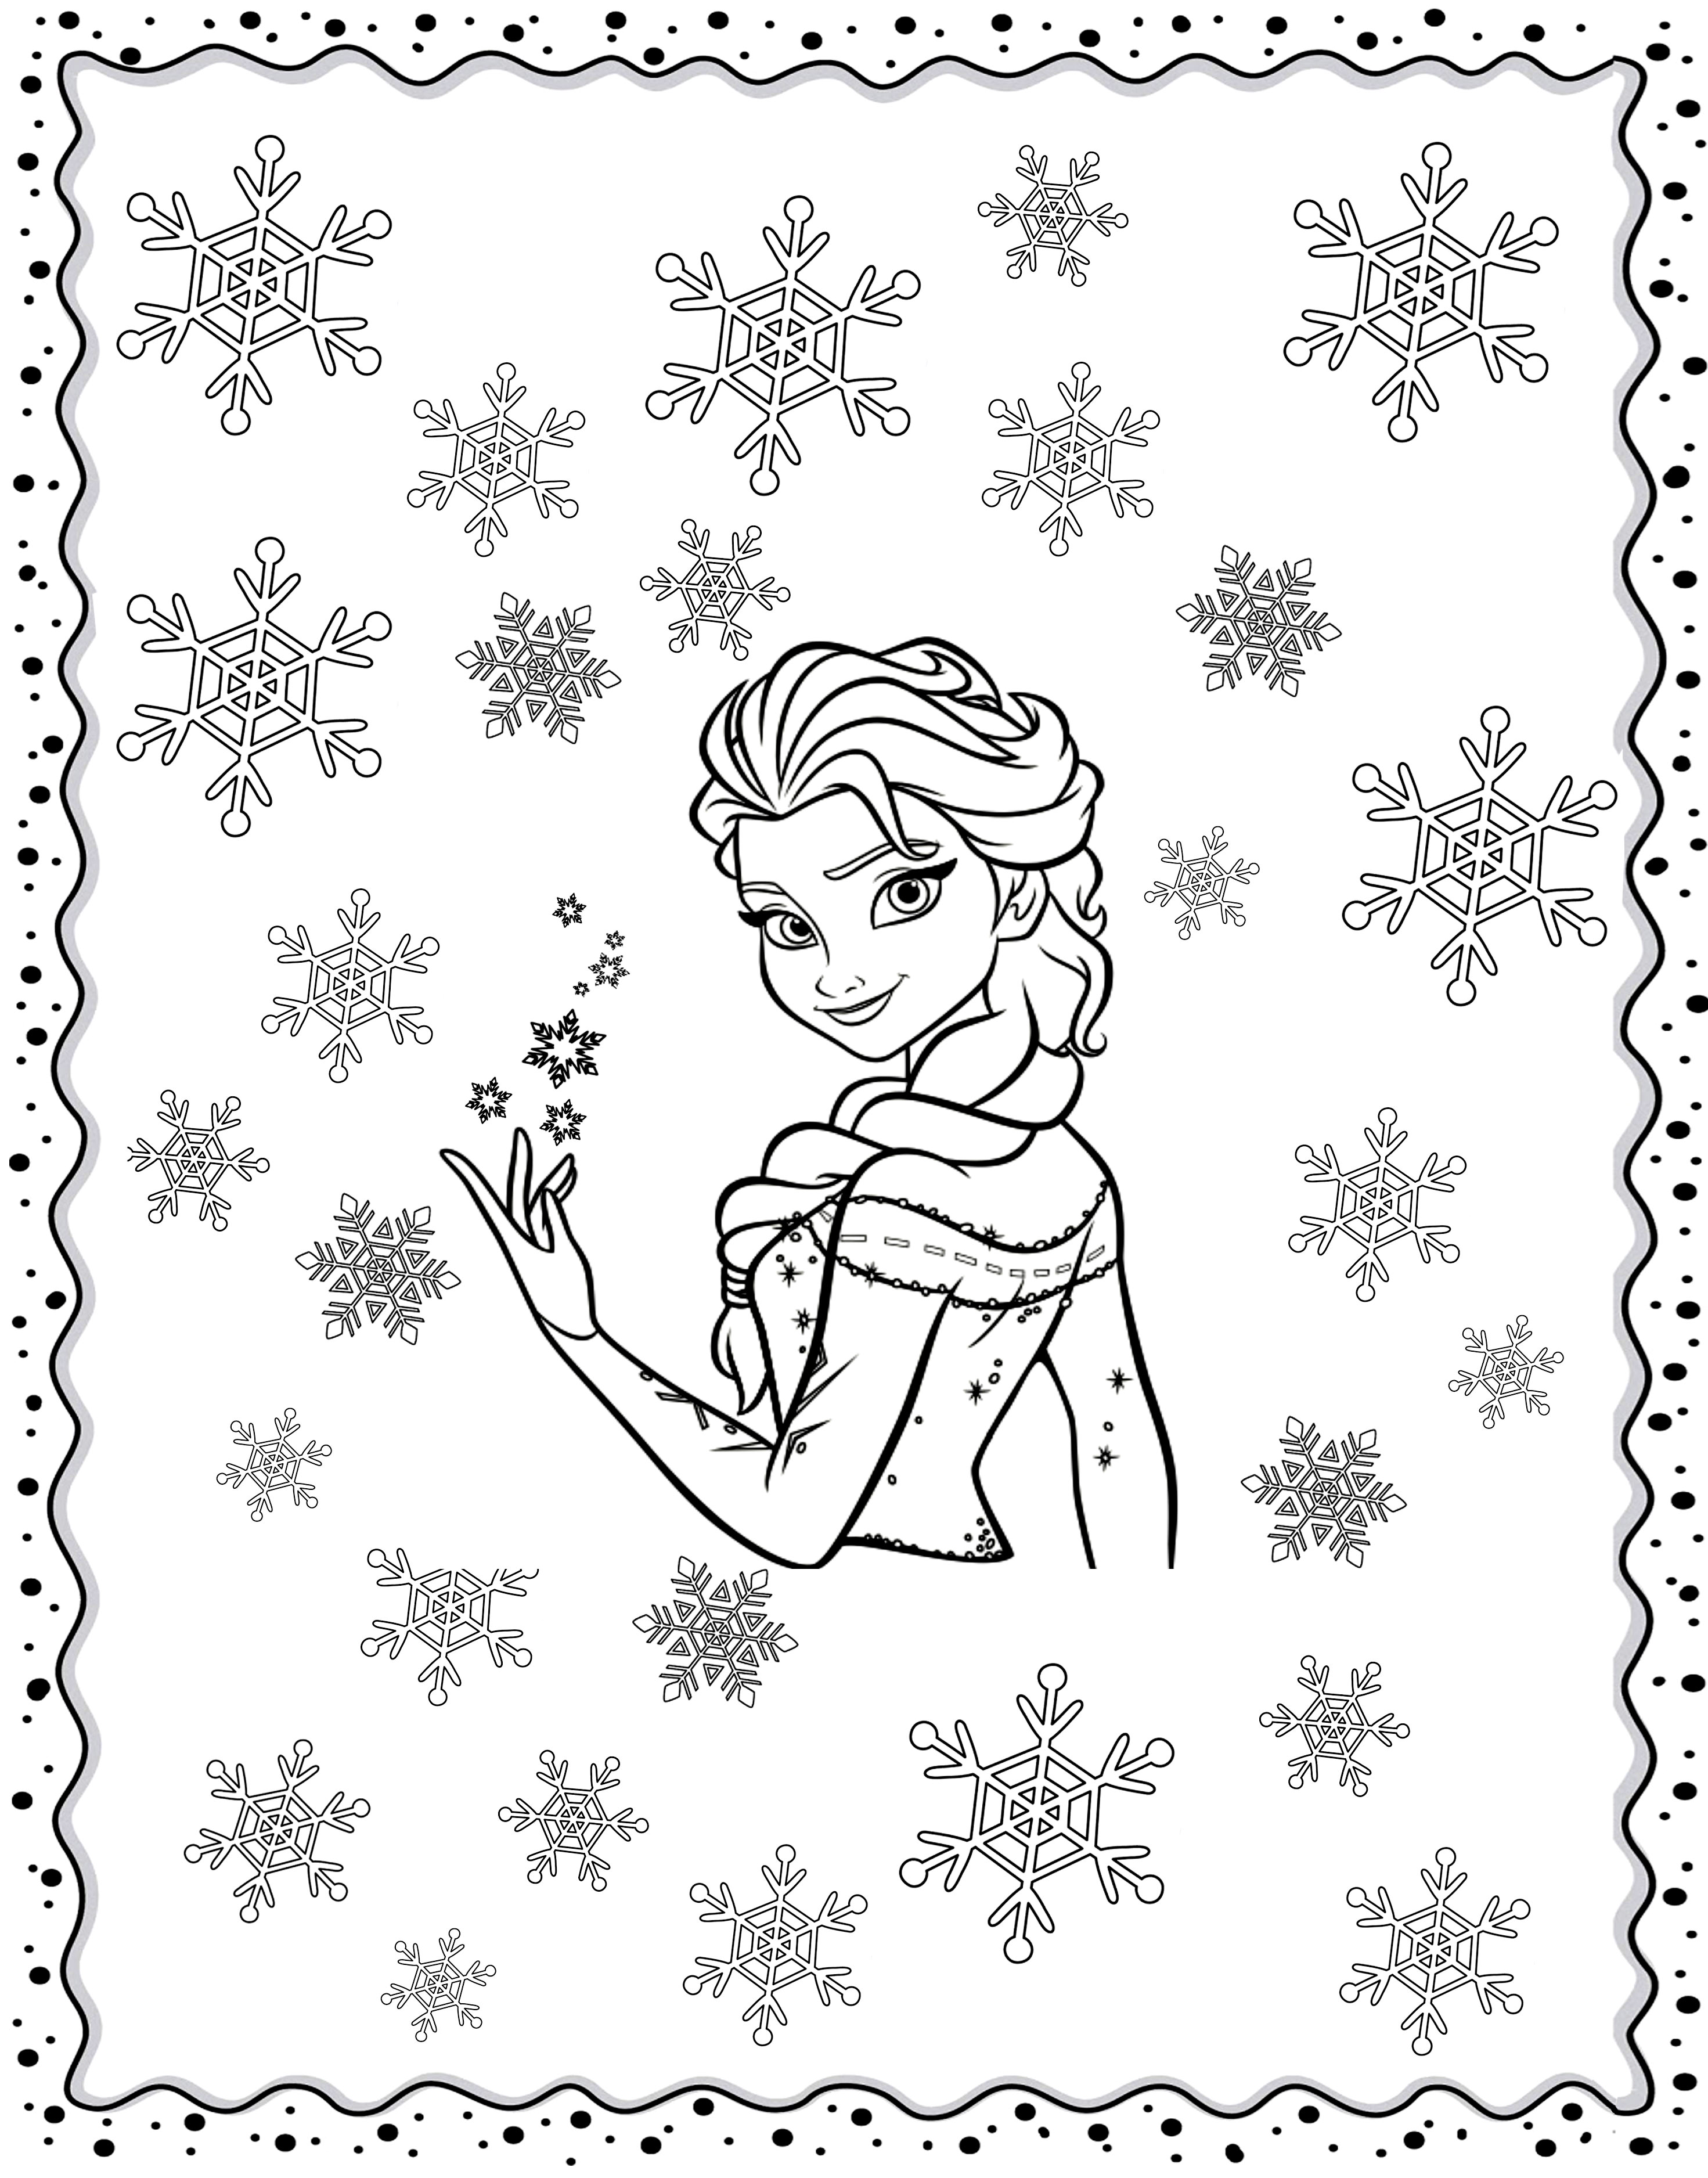 Dibujos para colorear gratis de Frozen (el Reino Del Hielo) para descargar